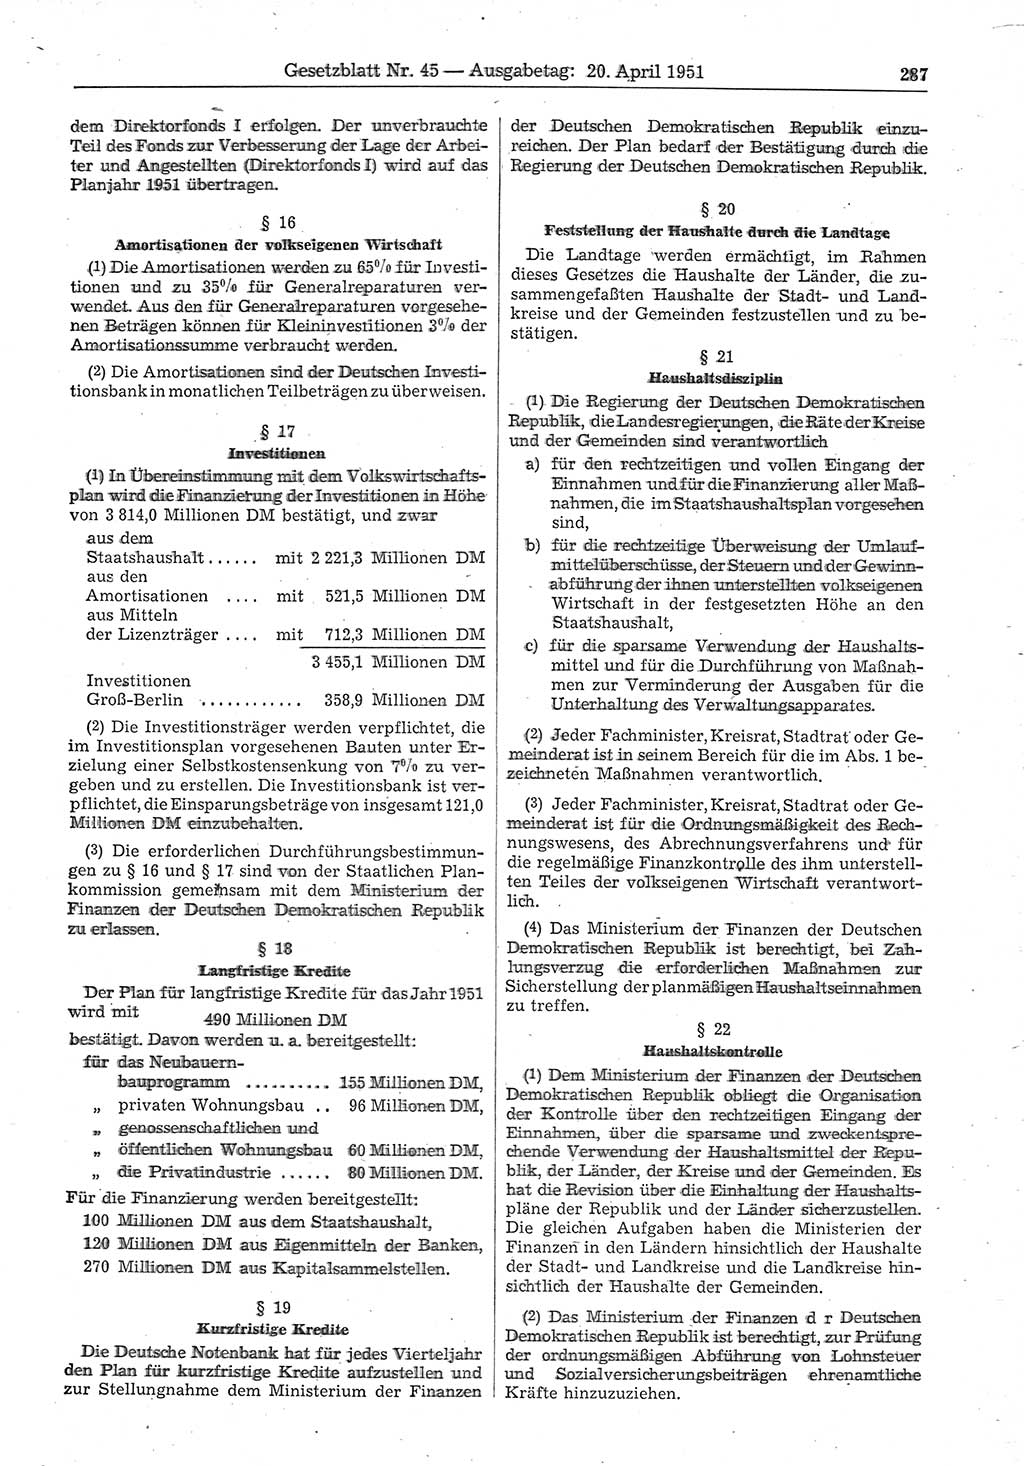 Gesetzblatt (GBl.) der Deutschen Demokratischen Republik (DDR) 1951, Seite 287 (GBl. DDR 1951, S. 287)